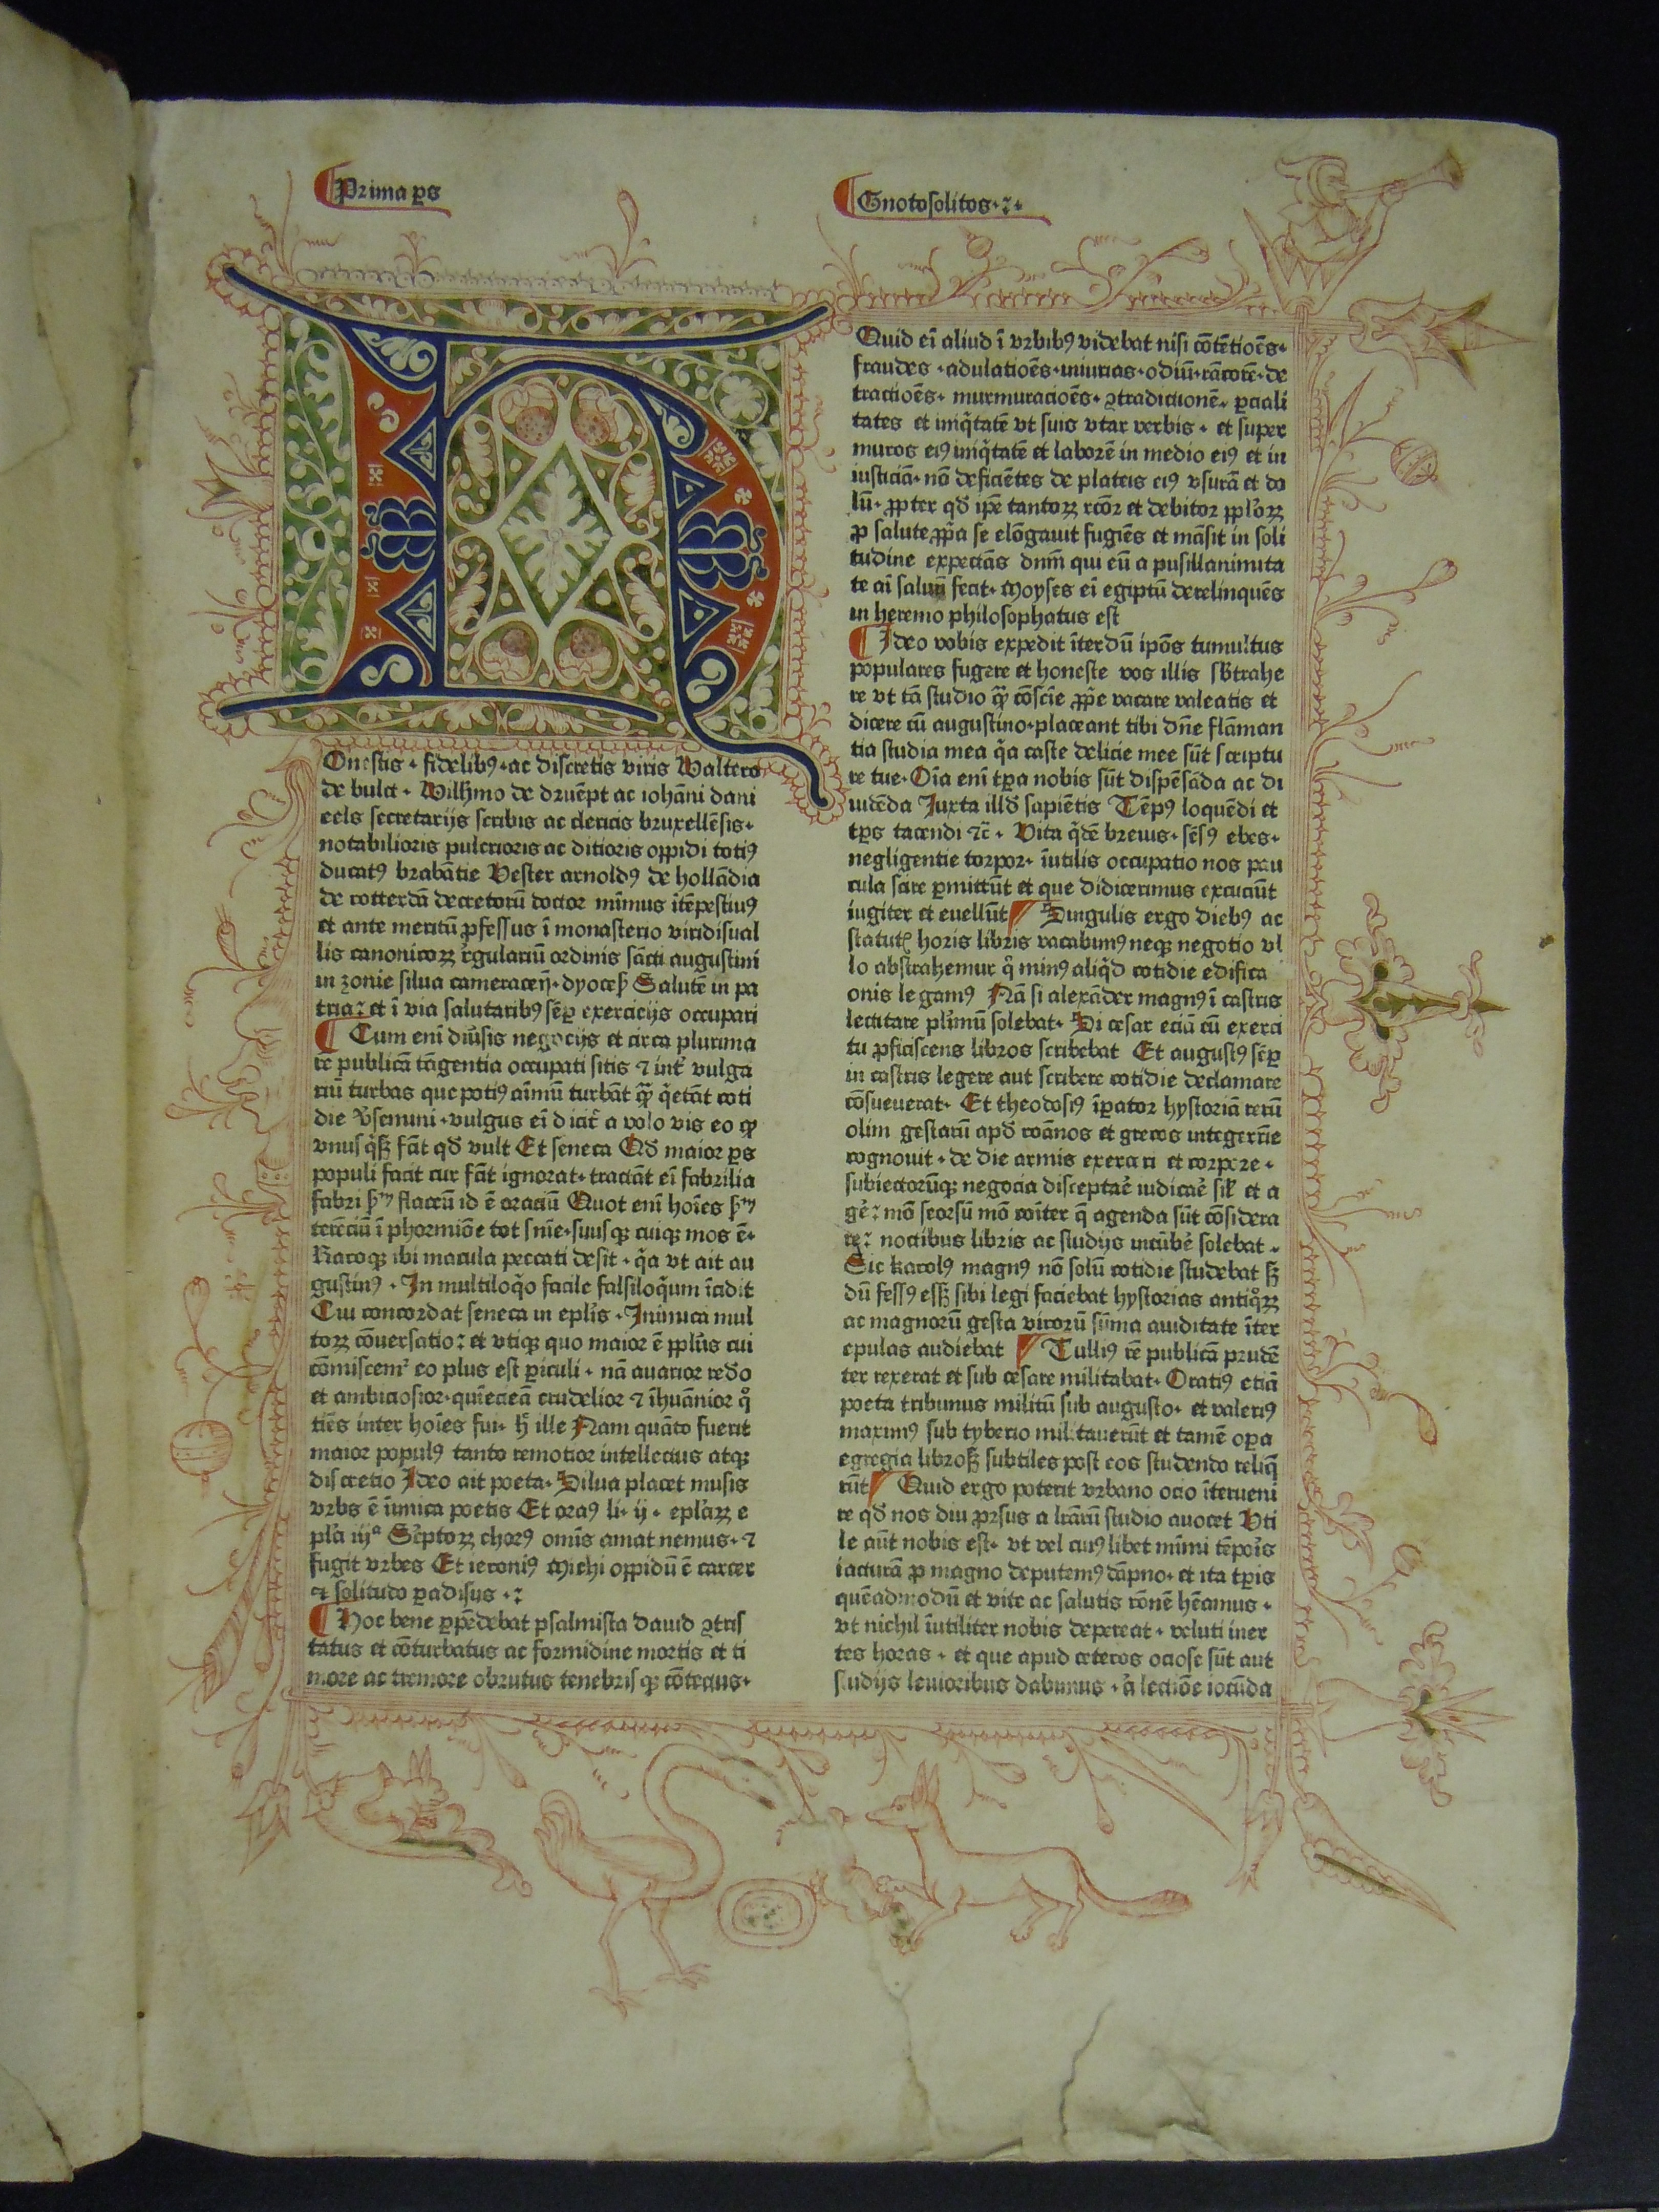 BT1.112.2, f.1r, Arnoldus de Geilhoven’s Gnotosolitos, sive Speculum conscientiae (1476)